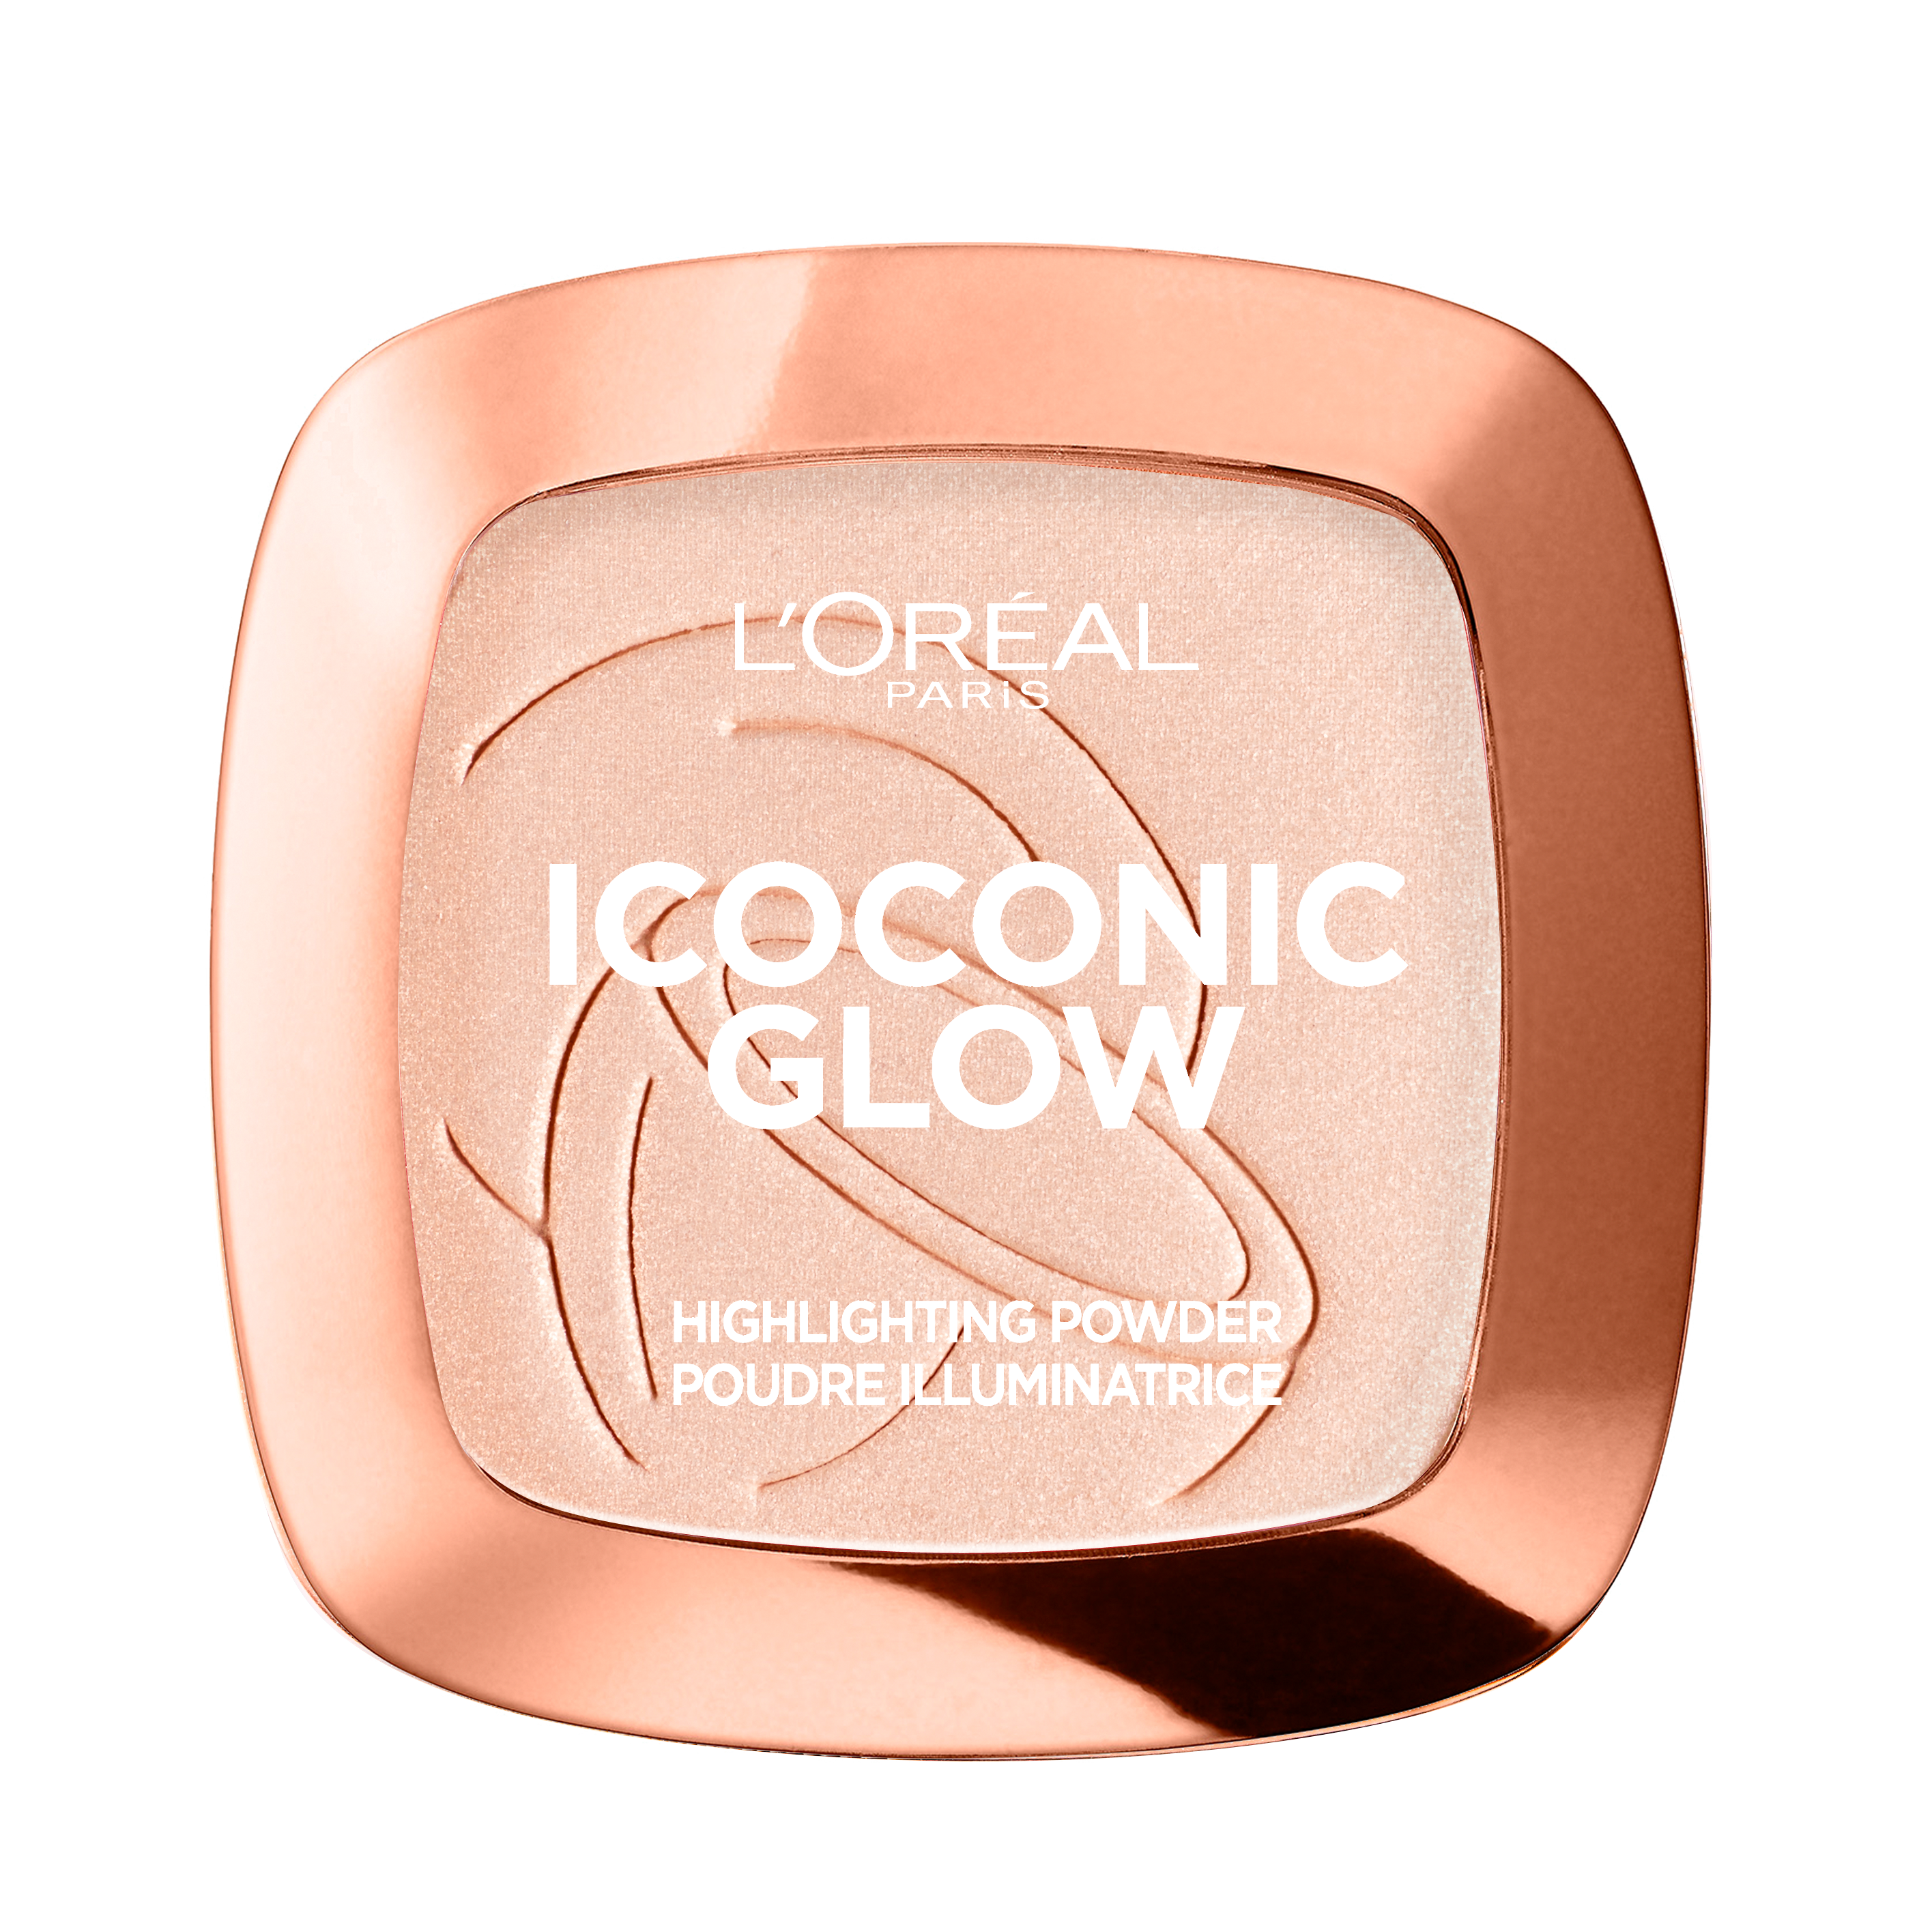 L'Oréal 01 Iconoc Glow Highlighter - Poeder Highlighter - 9 gr.